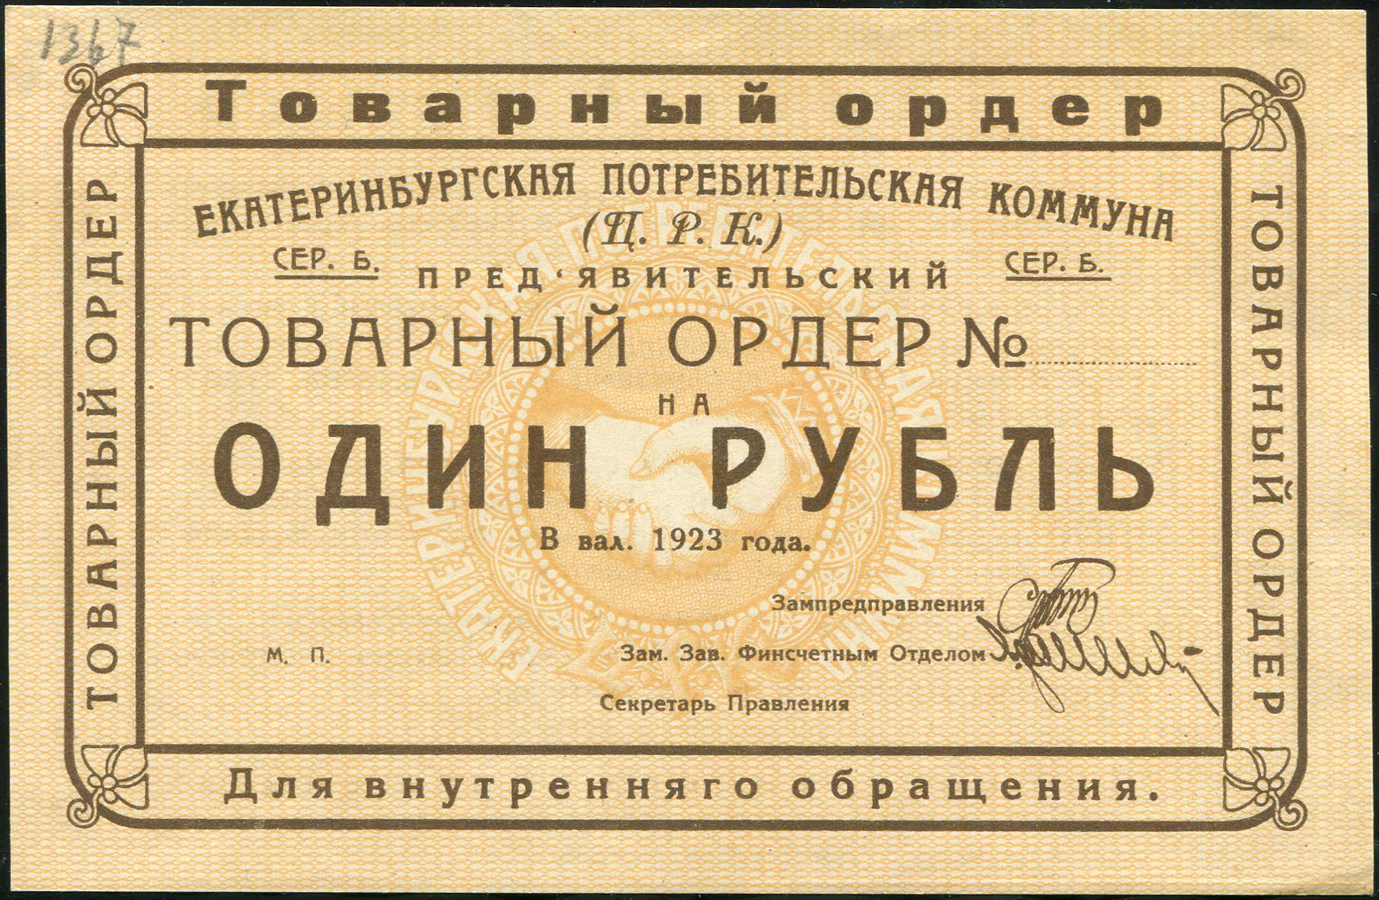 1 рубль 1923 (Екатеринбургская потребительская комунна)